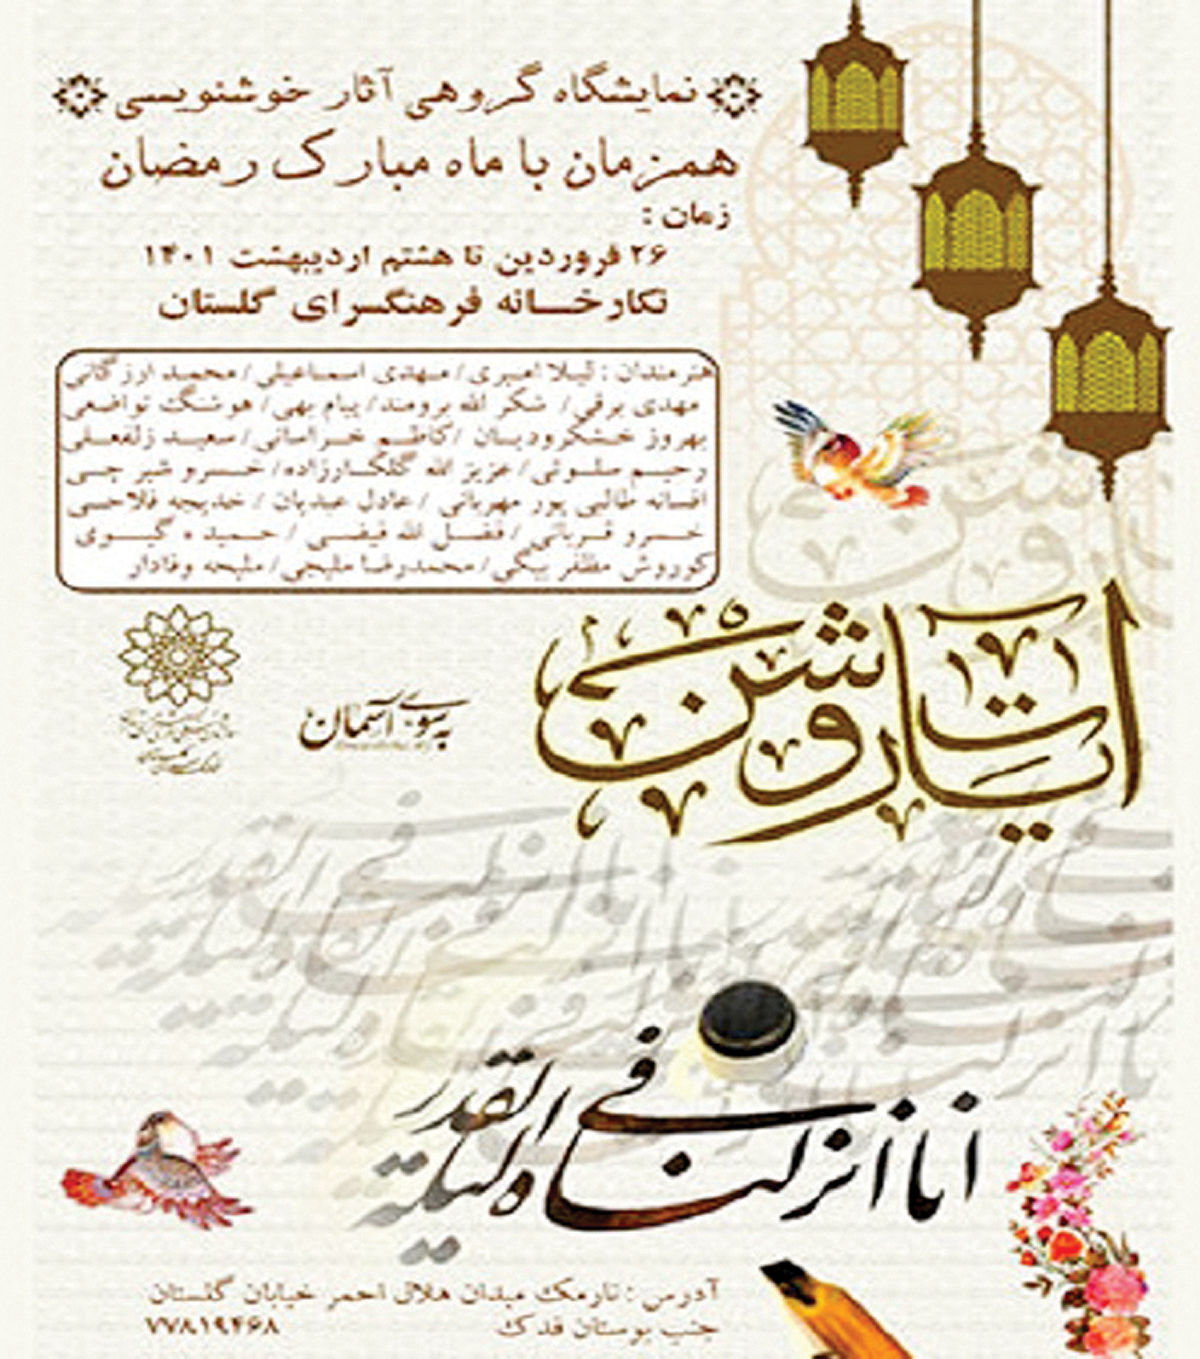 نمایشگاه خوشنویسی در نگارخانه فرهنگسرای گلستان